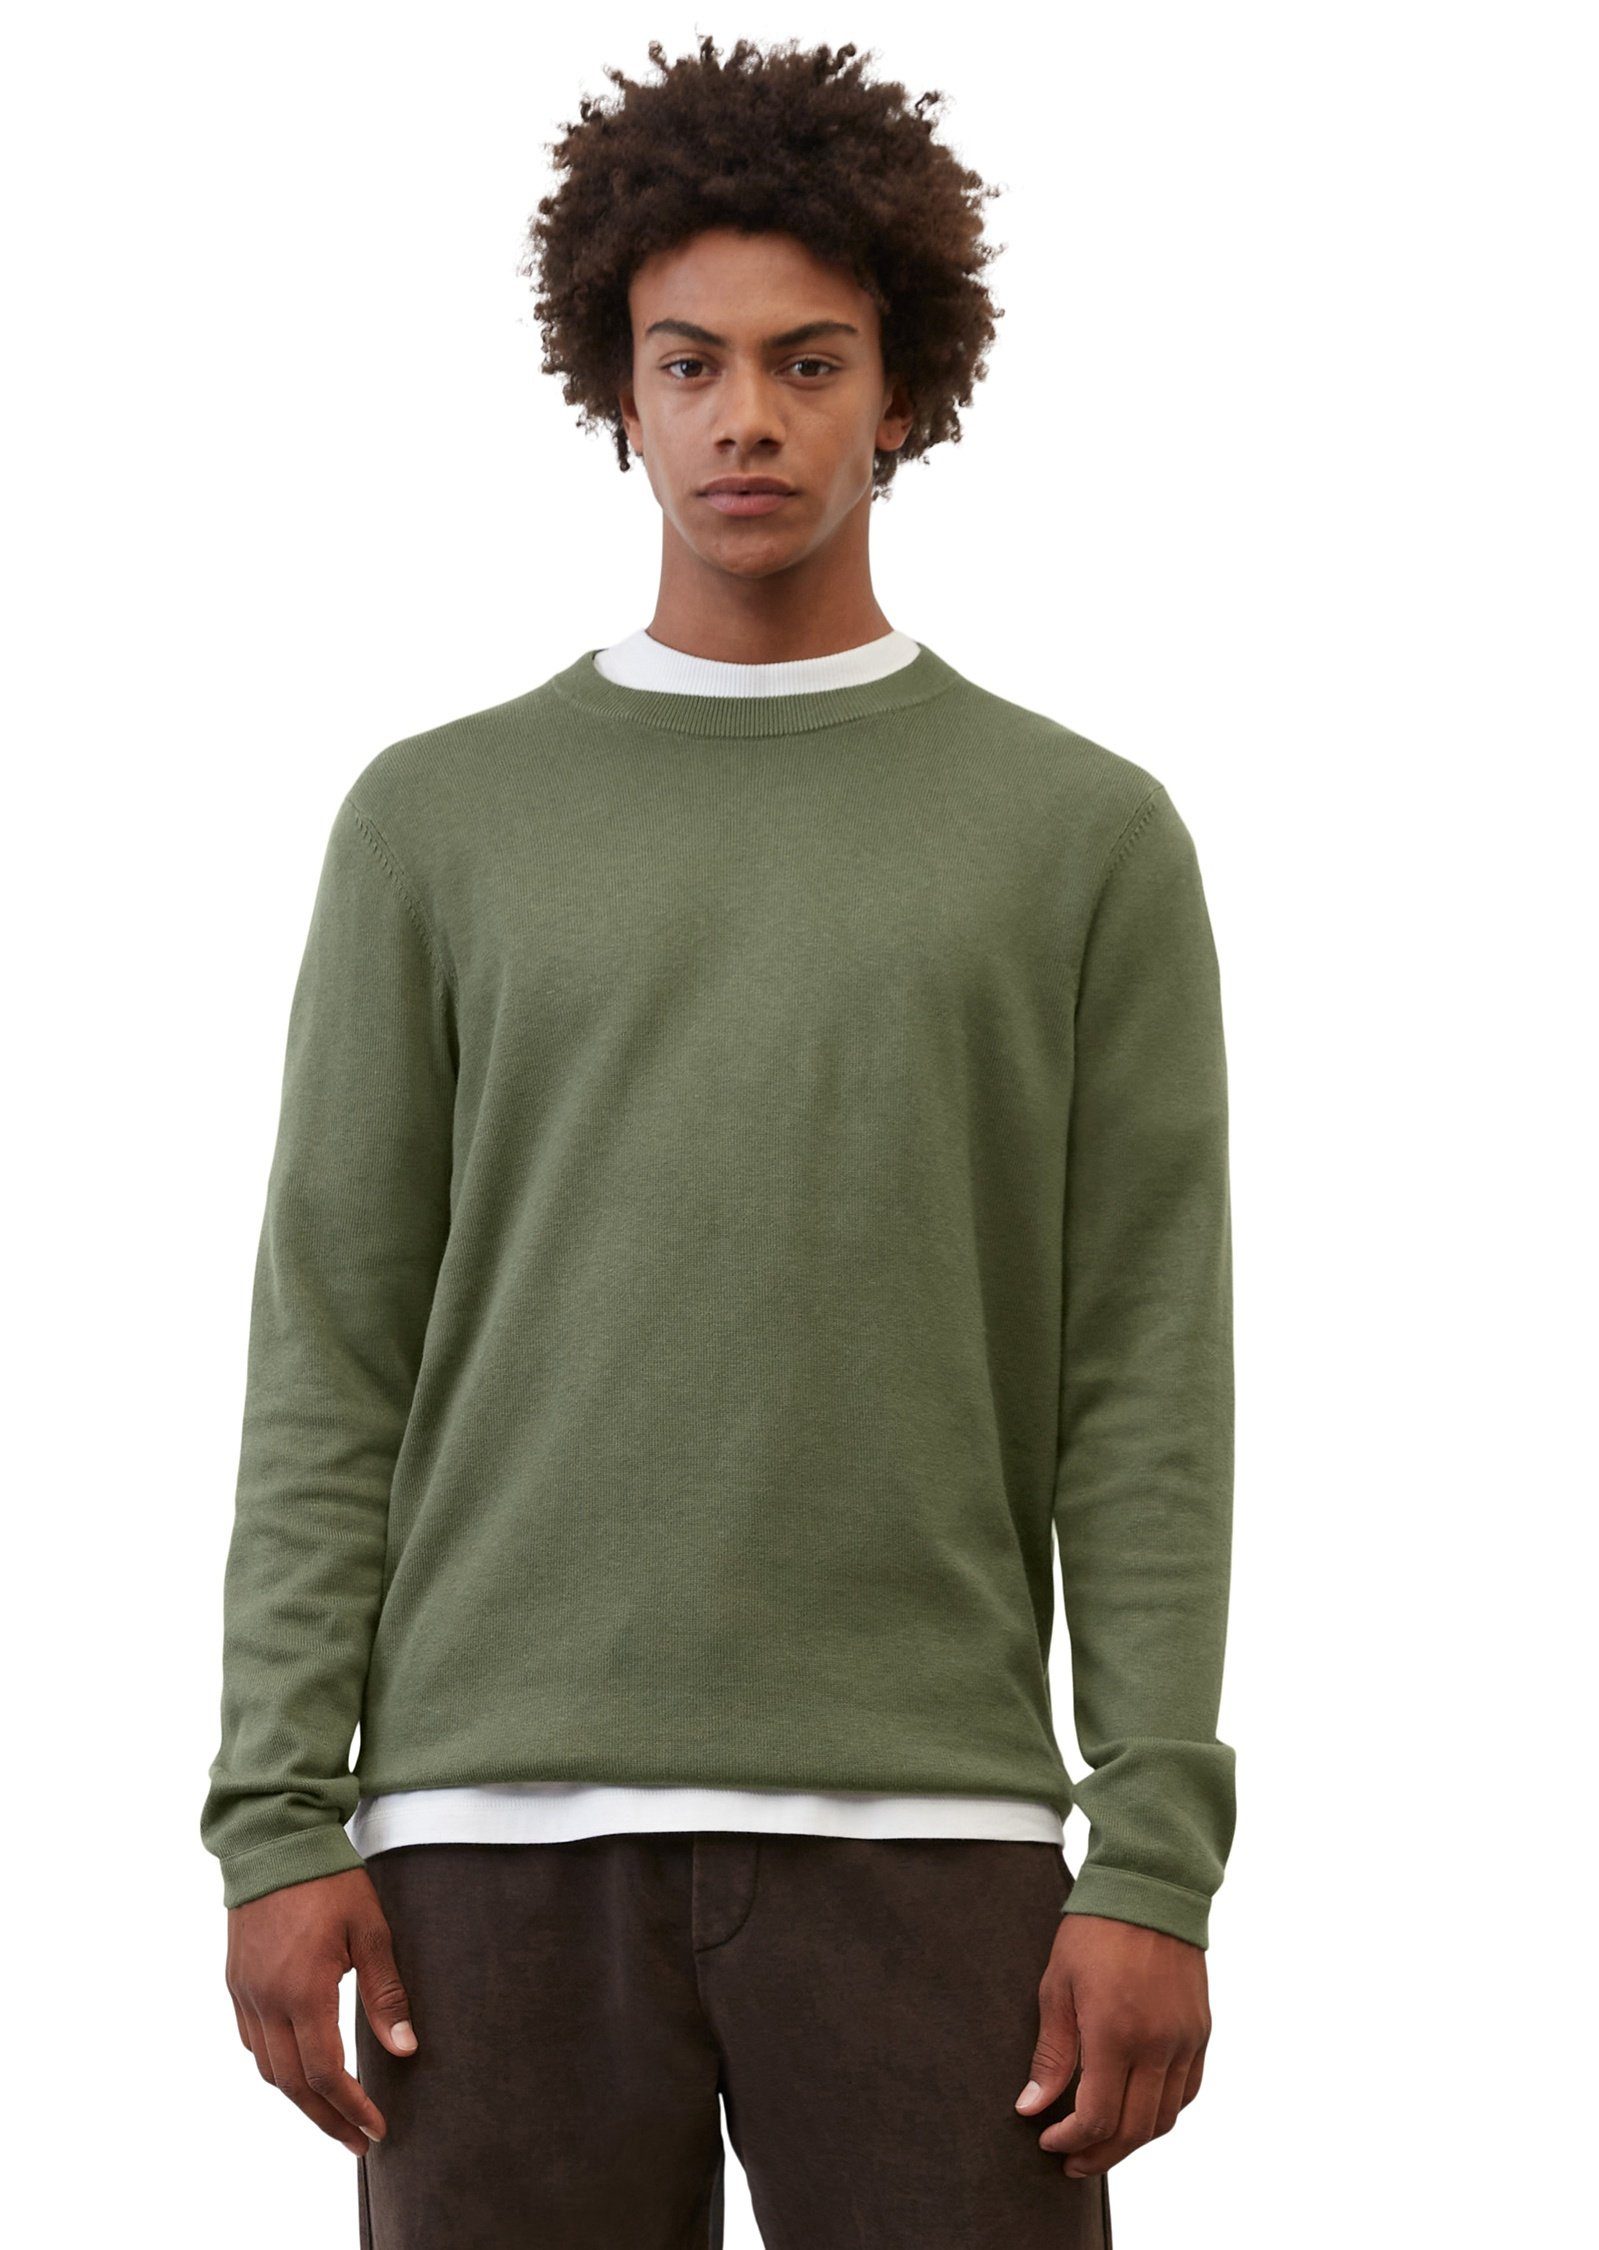 Marc O'Polo Rundhalspullover in softer Cotton-Cashmere-Qualität grün